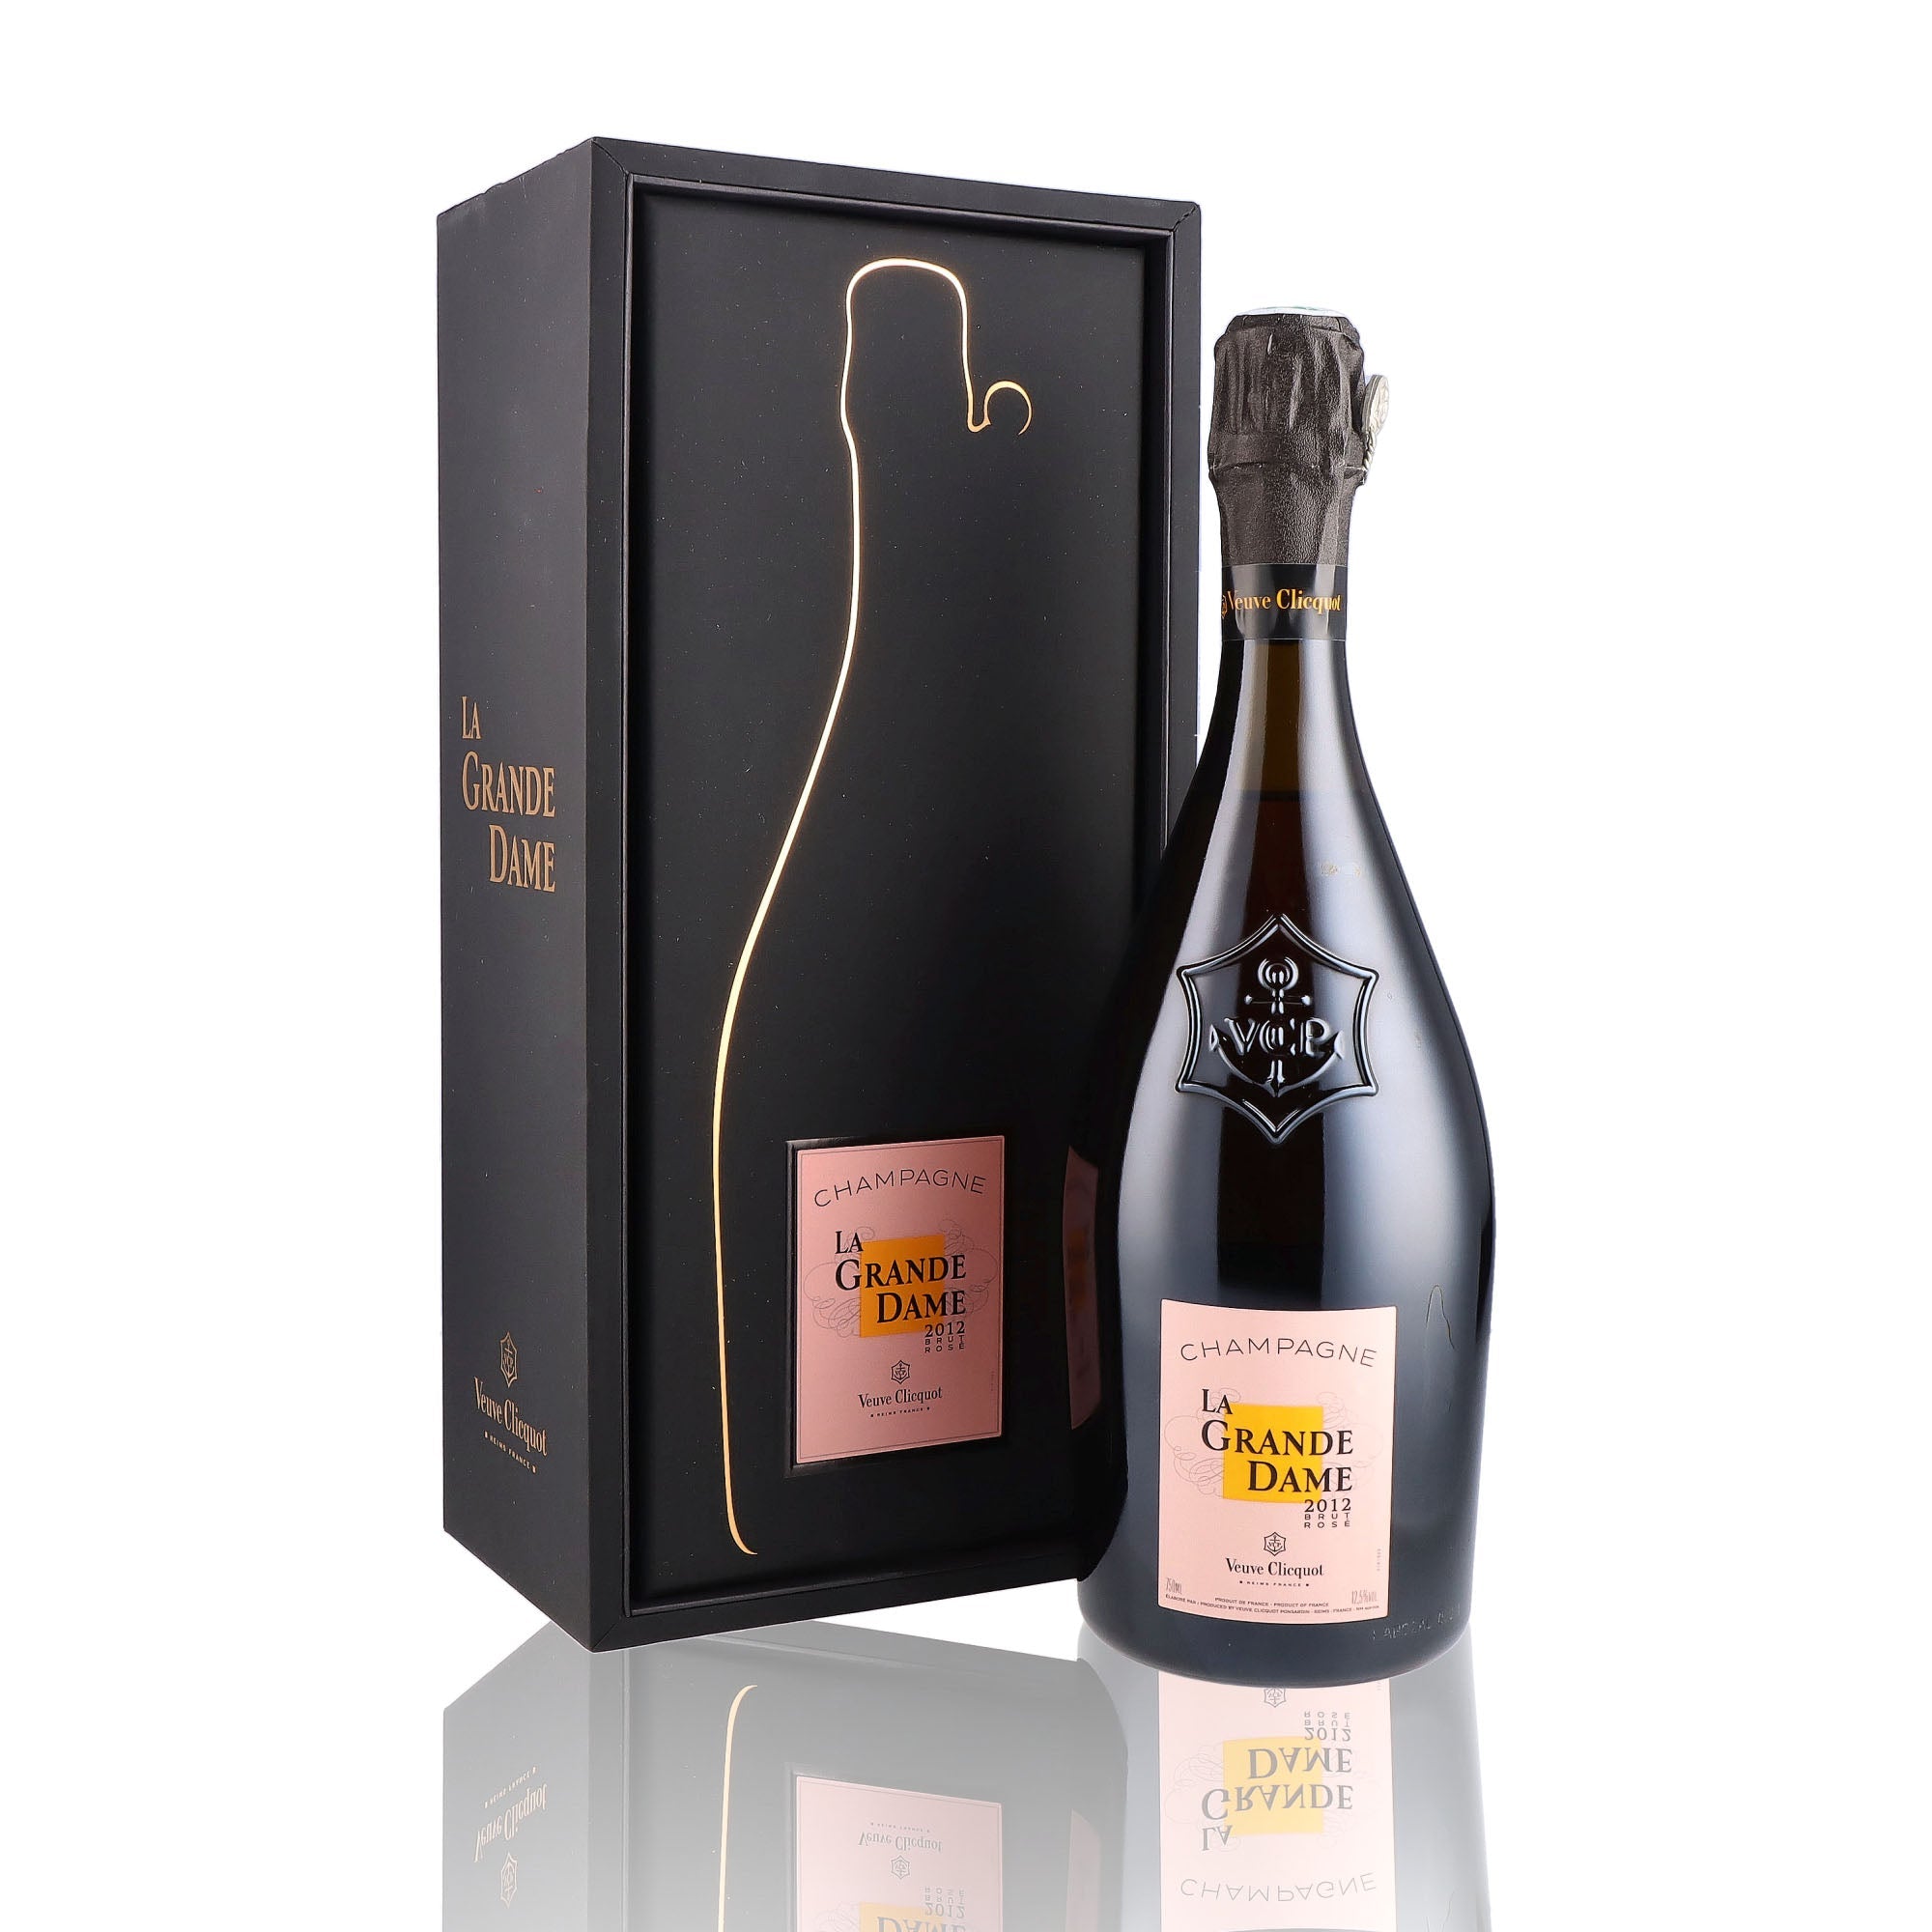 Une bouteille de champagne de la marque Veuve Clicquot, de type rosé, nommée la grande dame.